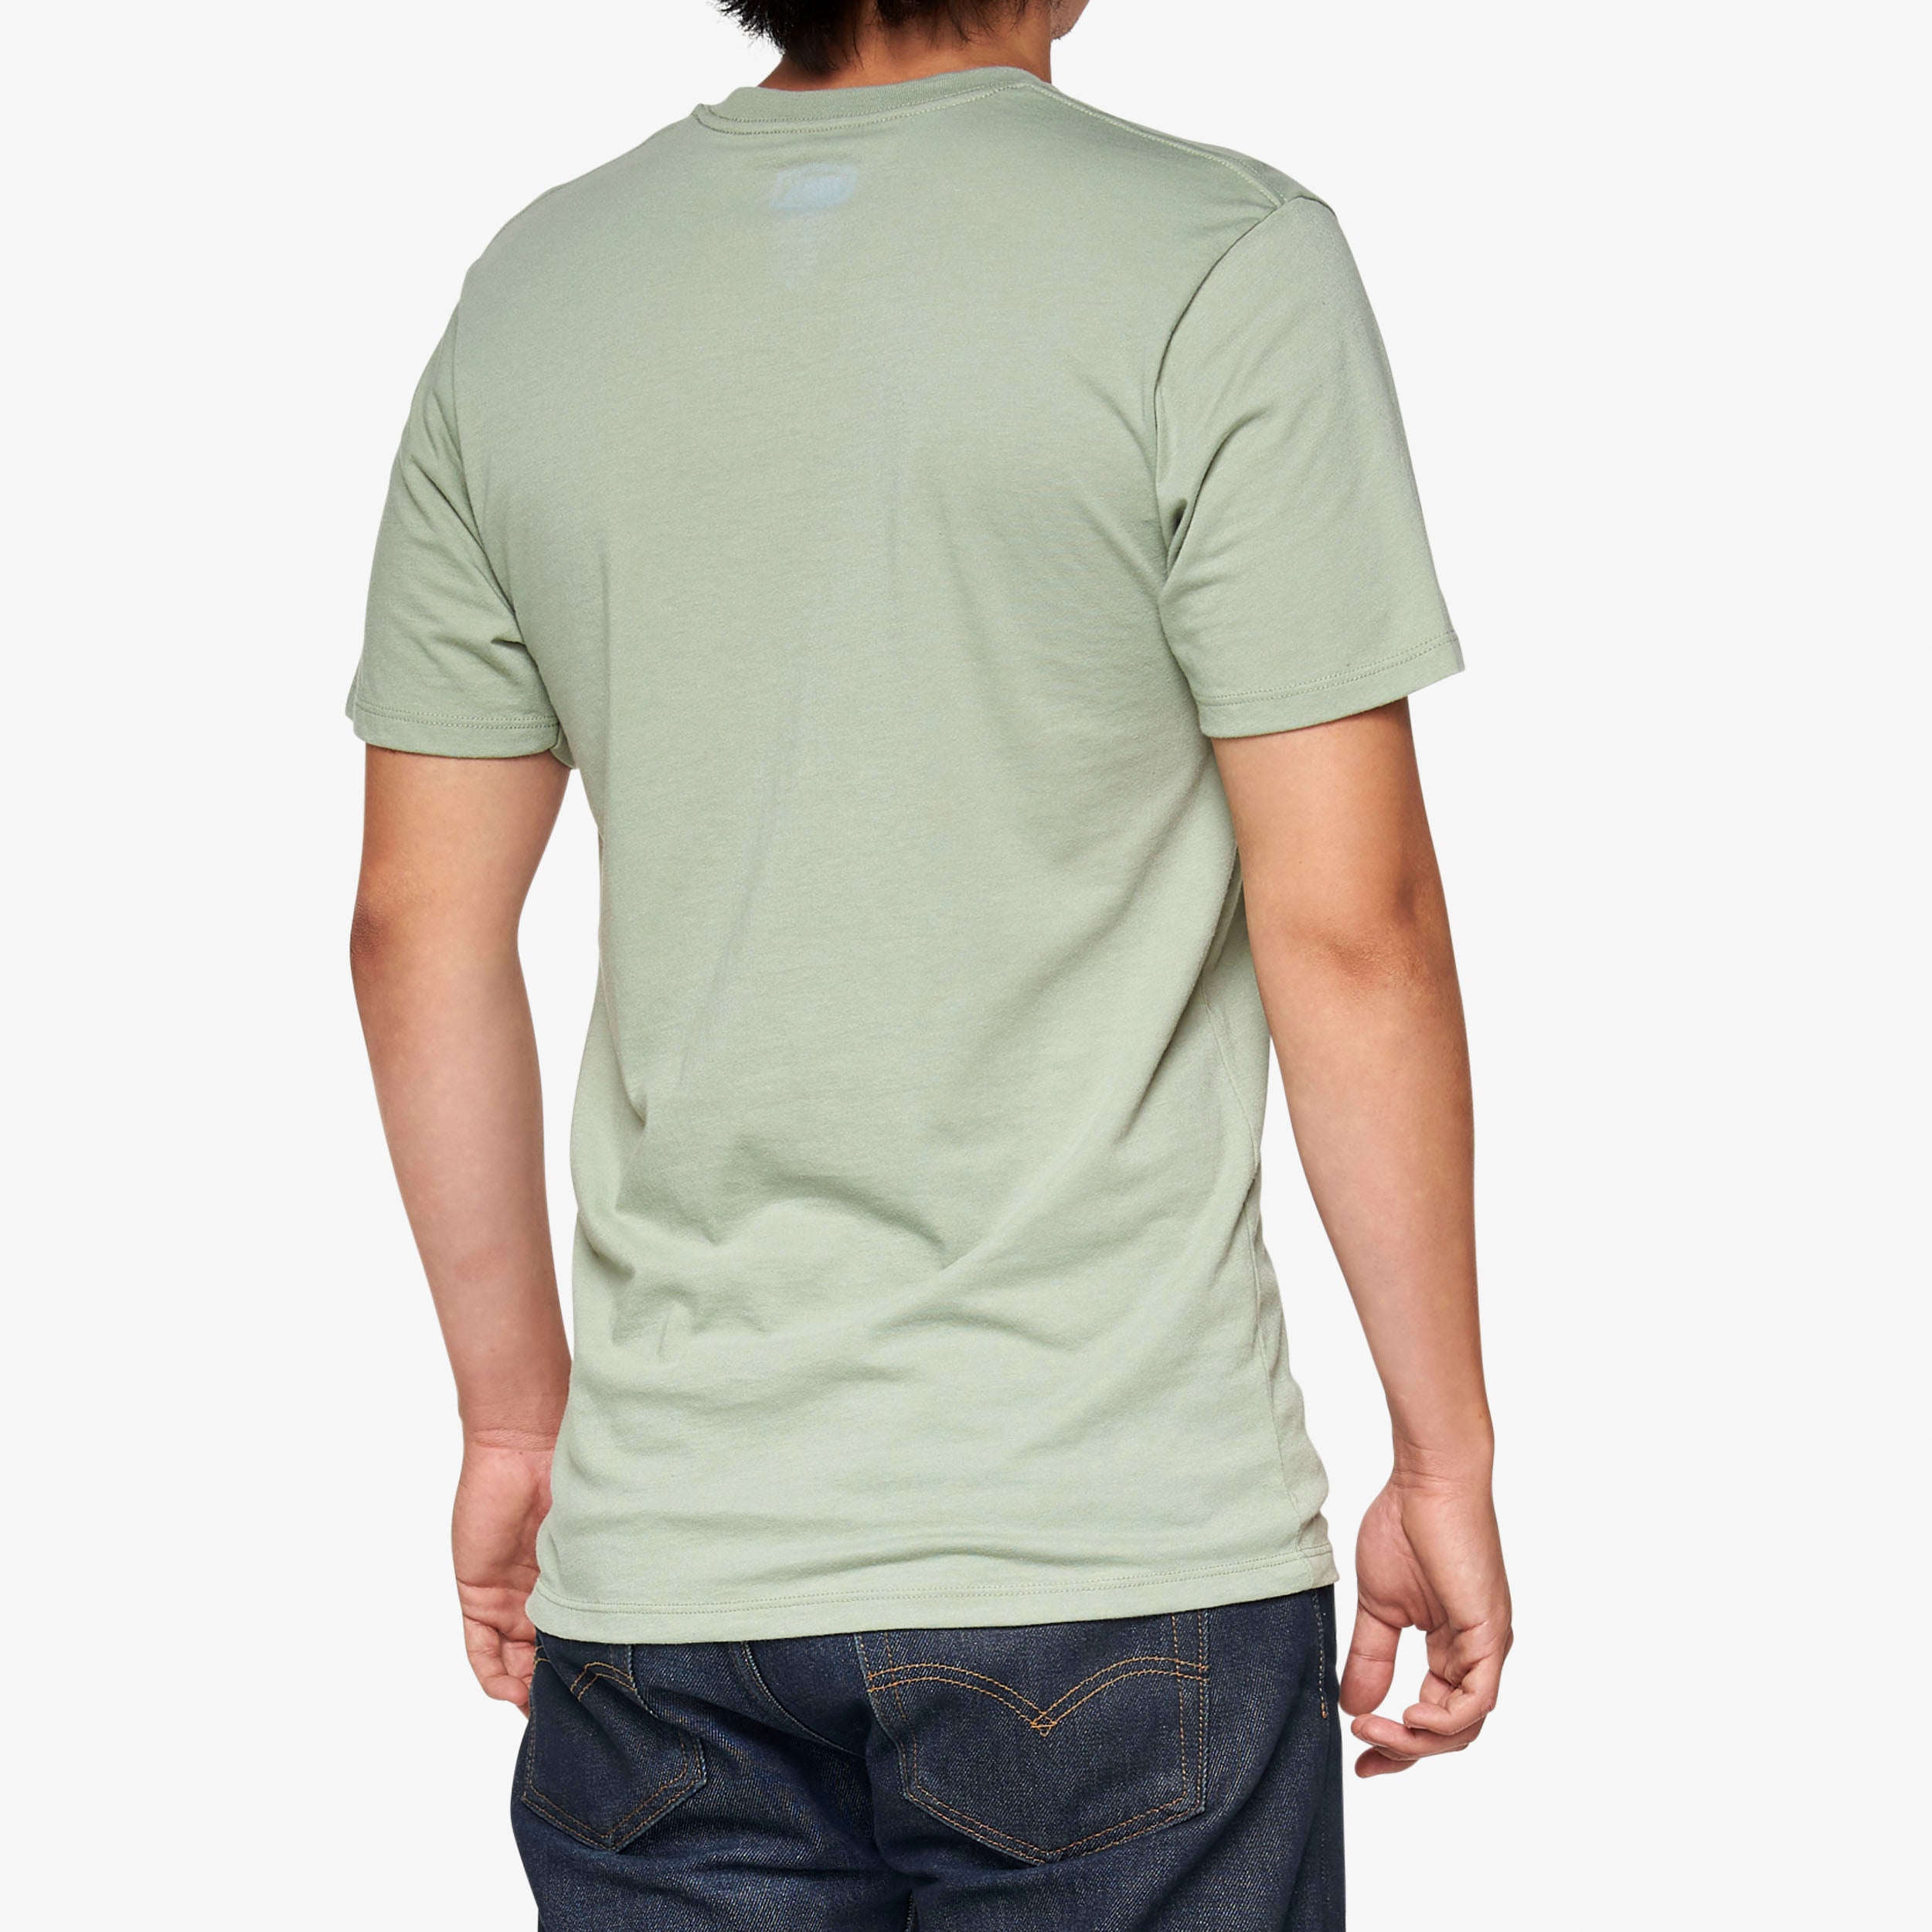 PECTEN T-Shirt - Slate Green - Secondary